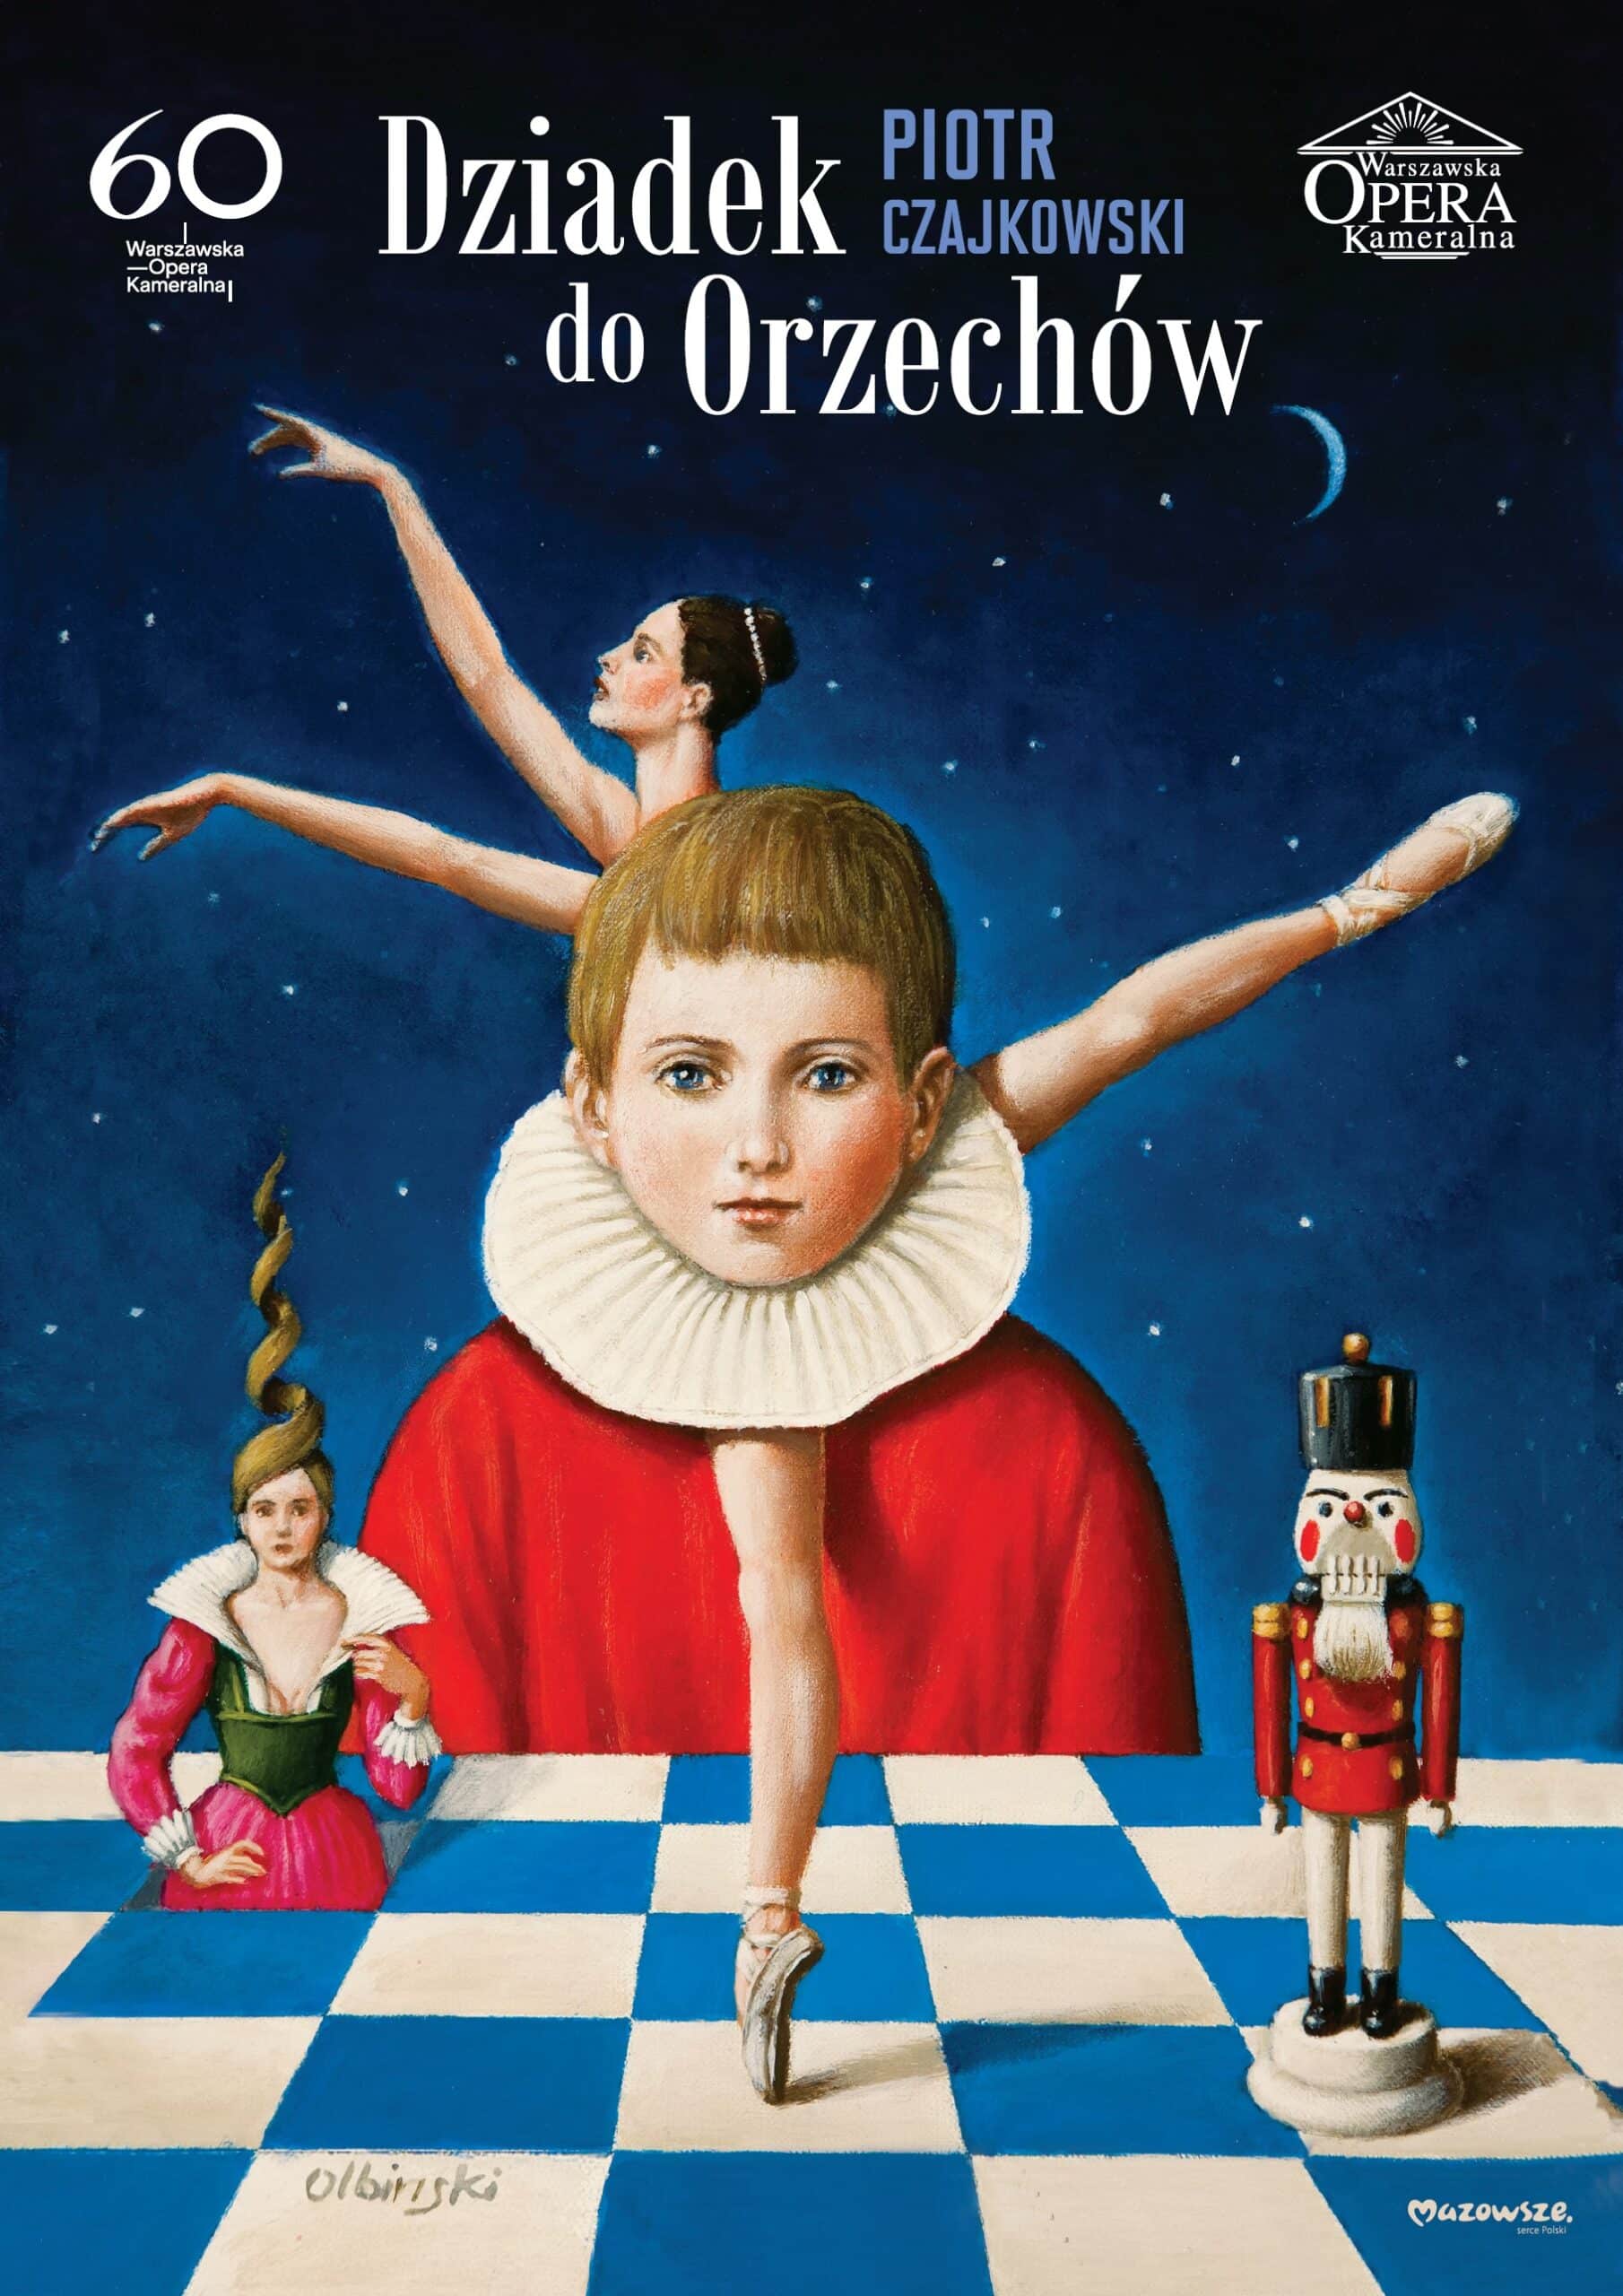 Dziadek Do Orzechów Bajka Cda Plakat "Dziadek do orzechów"- Rafał Olbiński | Warszawska Opera Kameralna